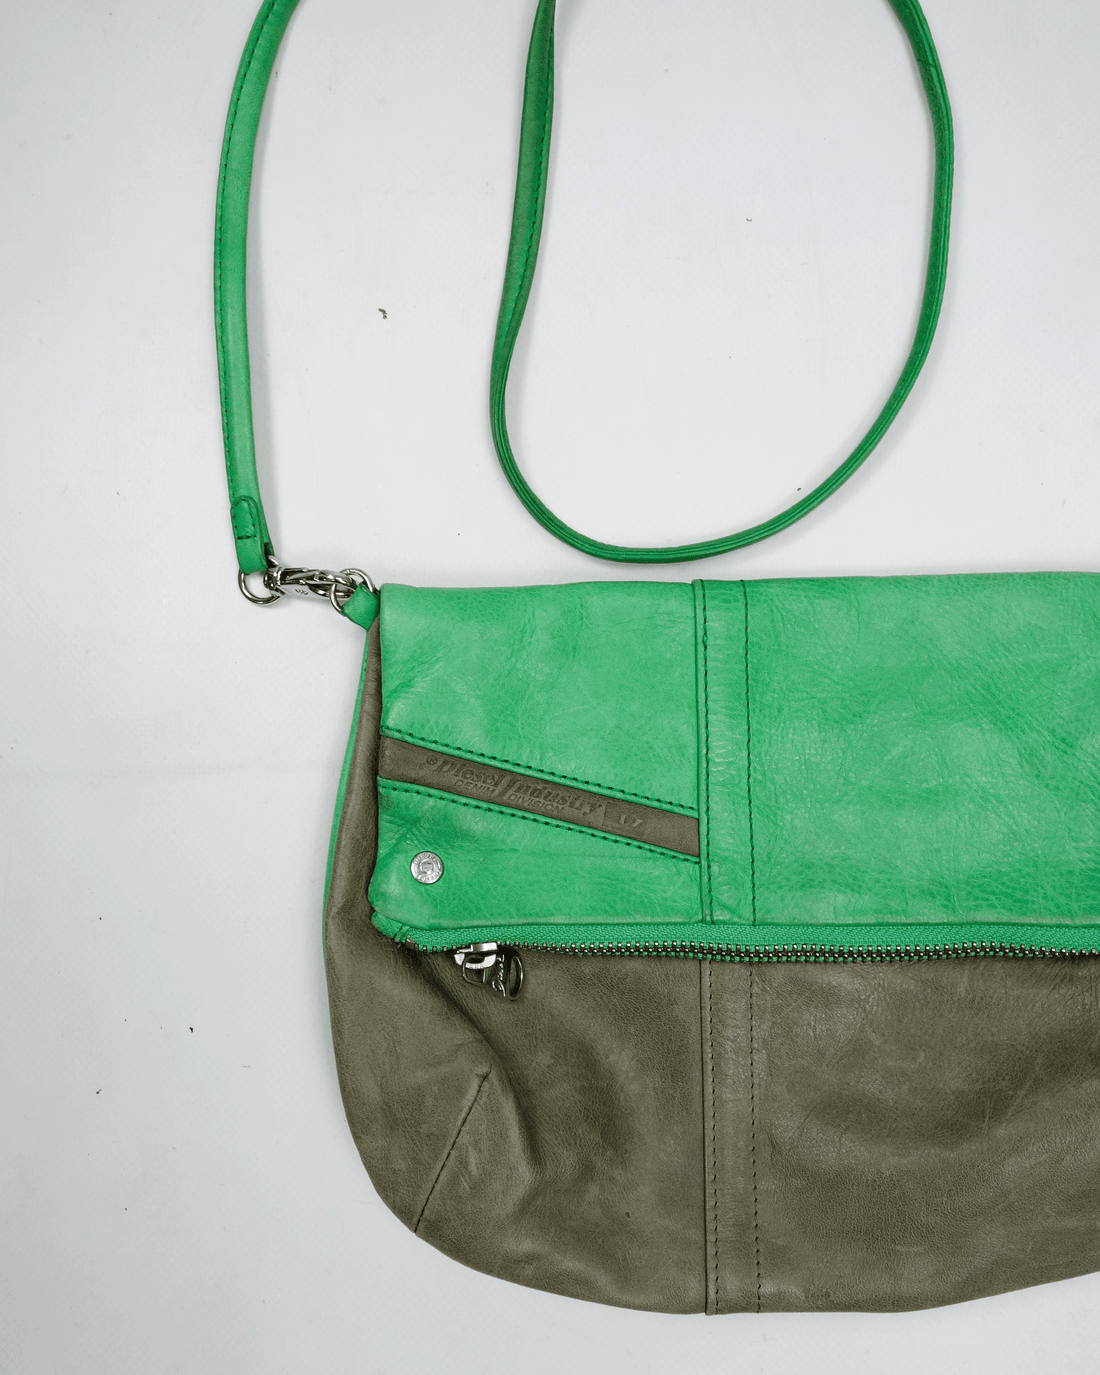 Diesel 2-Tone Green Leather Shoulder Bag 2000's